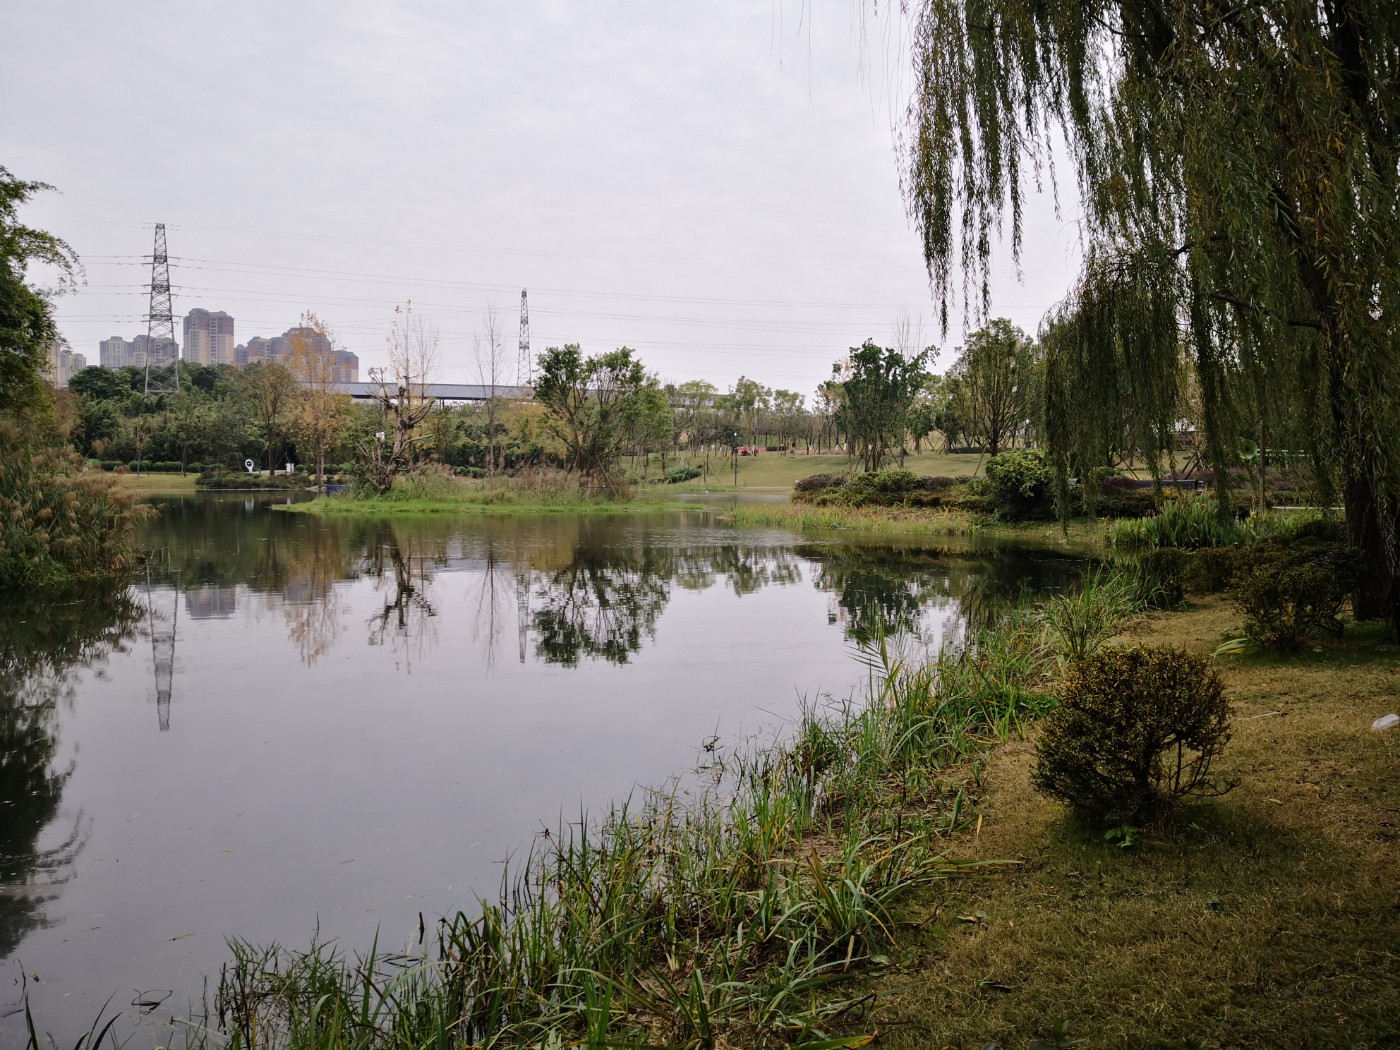 【美丽四川】系列图片之一百六十一:成都北湖生态公园 (三)